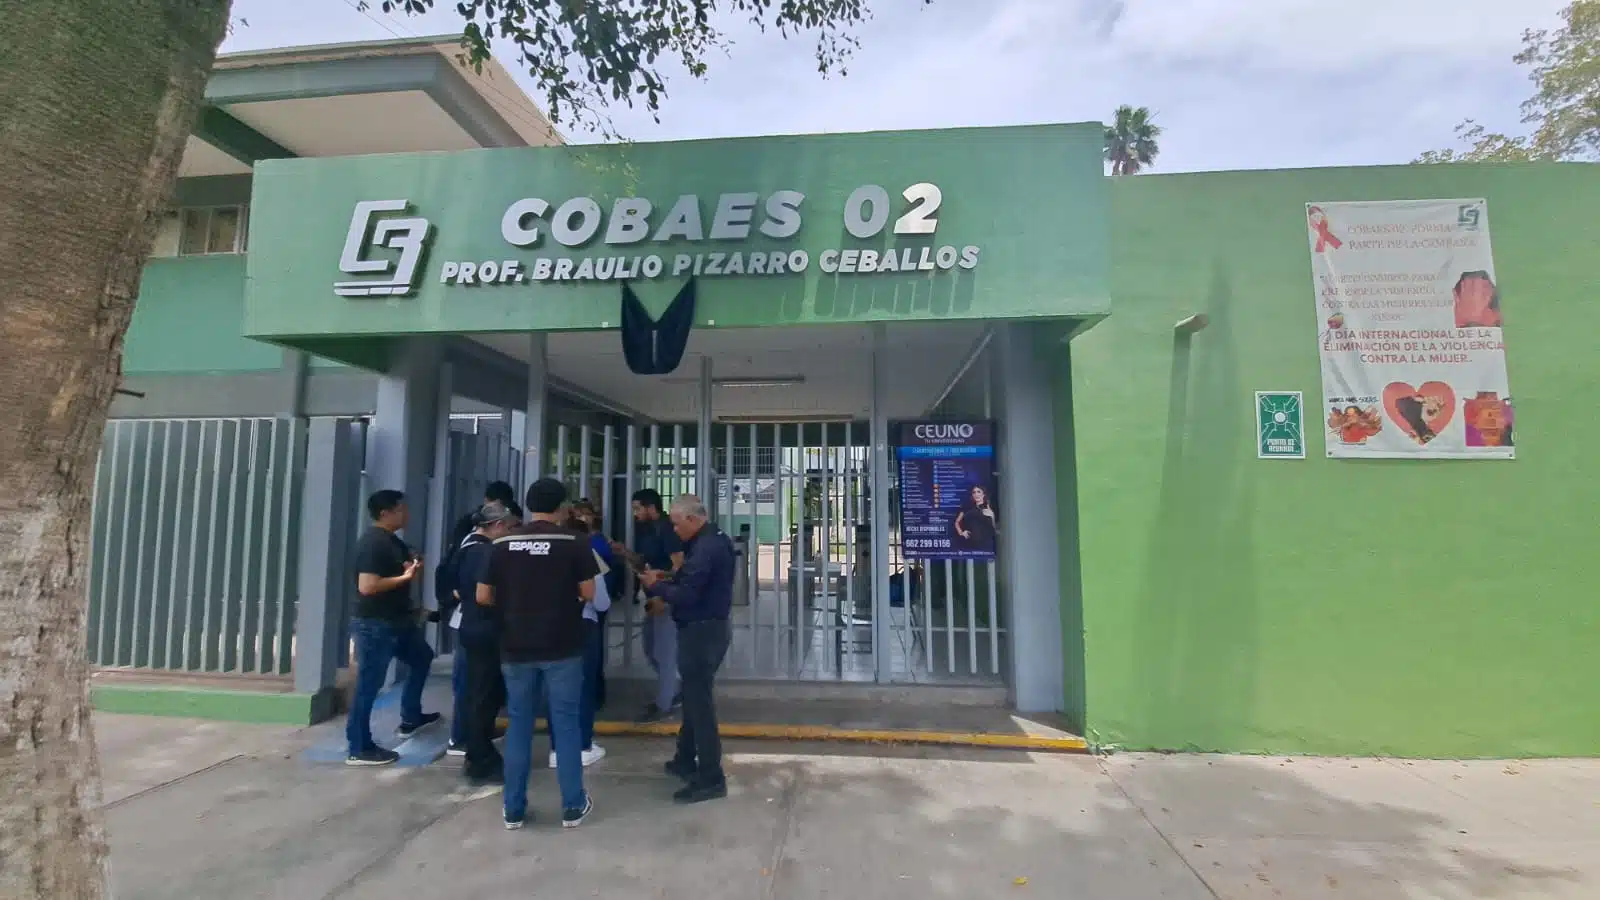 Tan solo en la Zona 01 del Cobaes son alrededor de mil 500 trabajadores que requieren el pago de este bono o compensación federal, precisó el coordinador ejecutivo Ascensión Zepeda Perea.